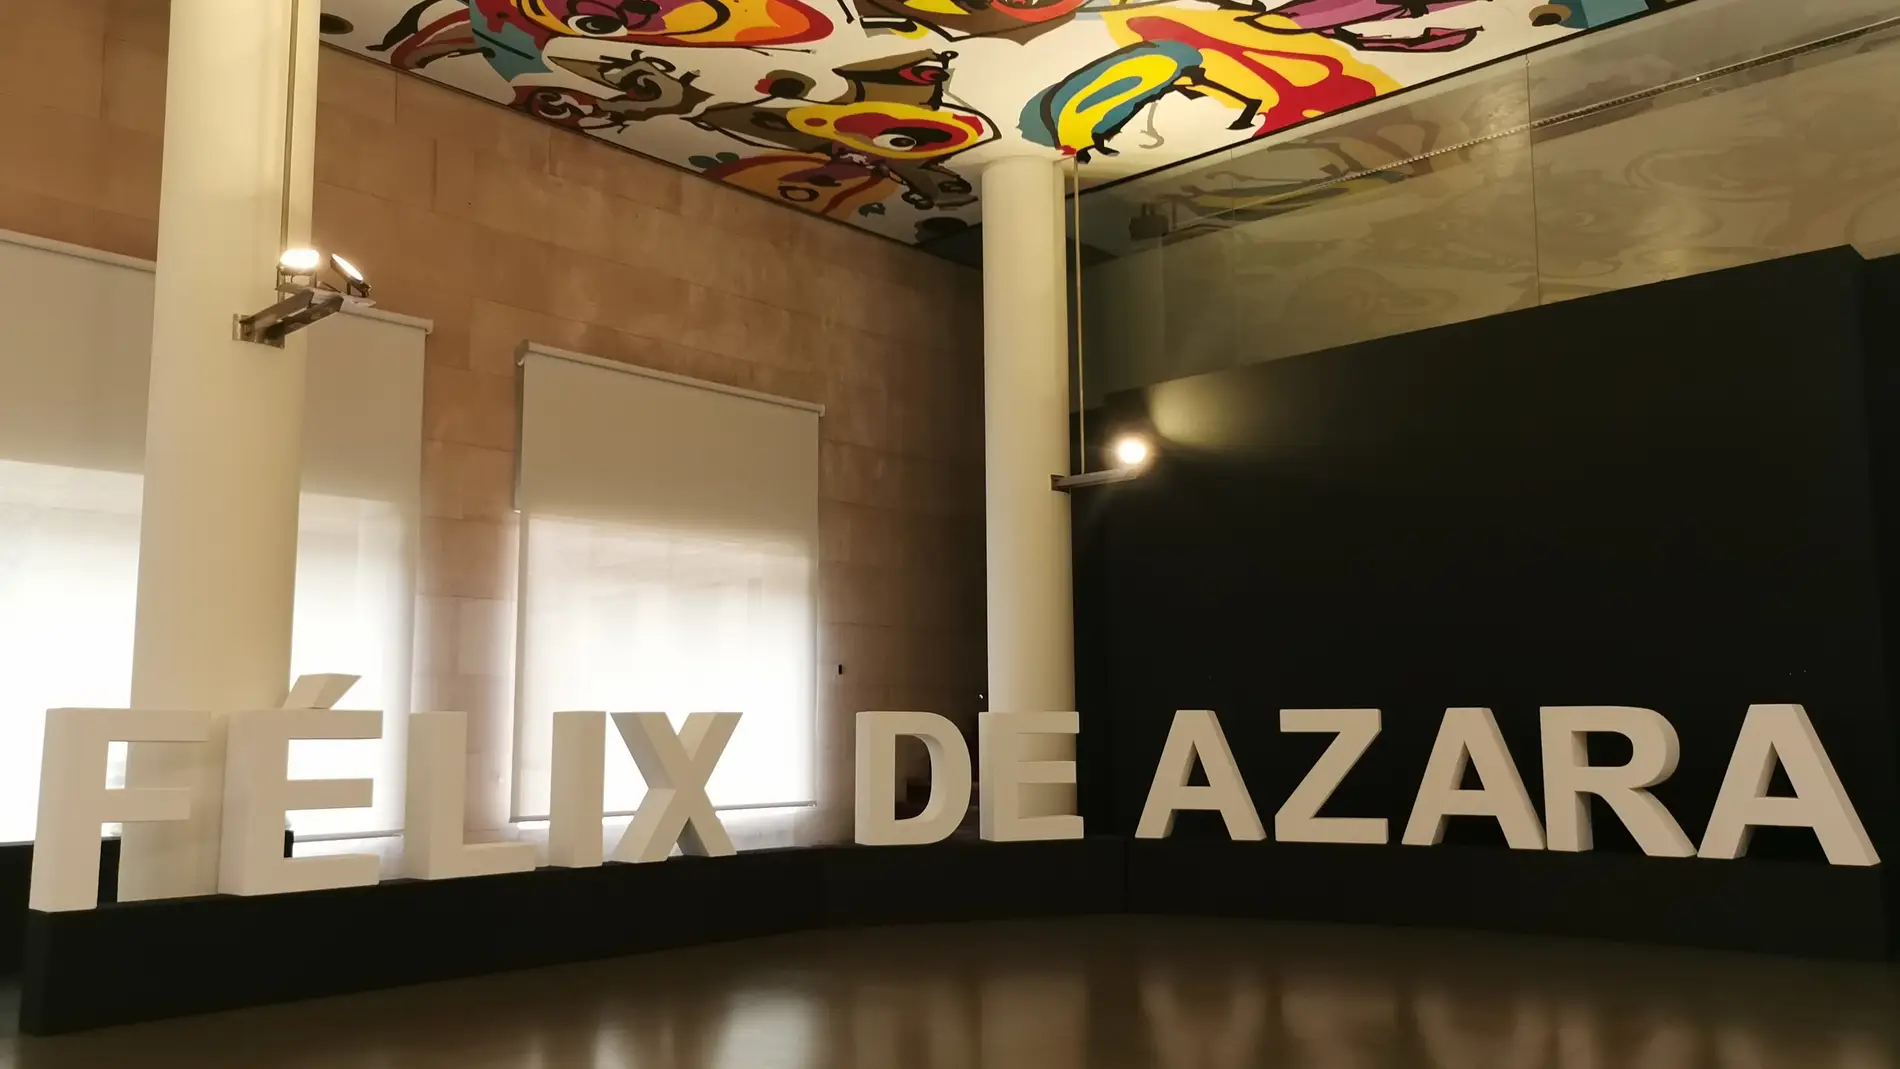 La Diputación Provincial de Huesca entrega este viernes el Galardón y Premios Félix de Azara 